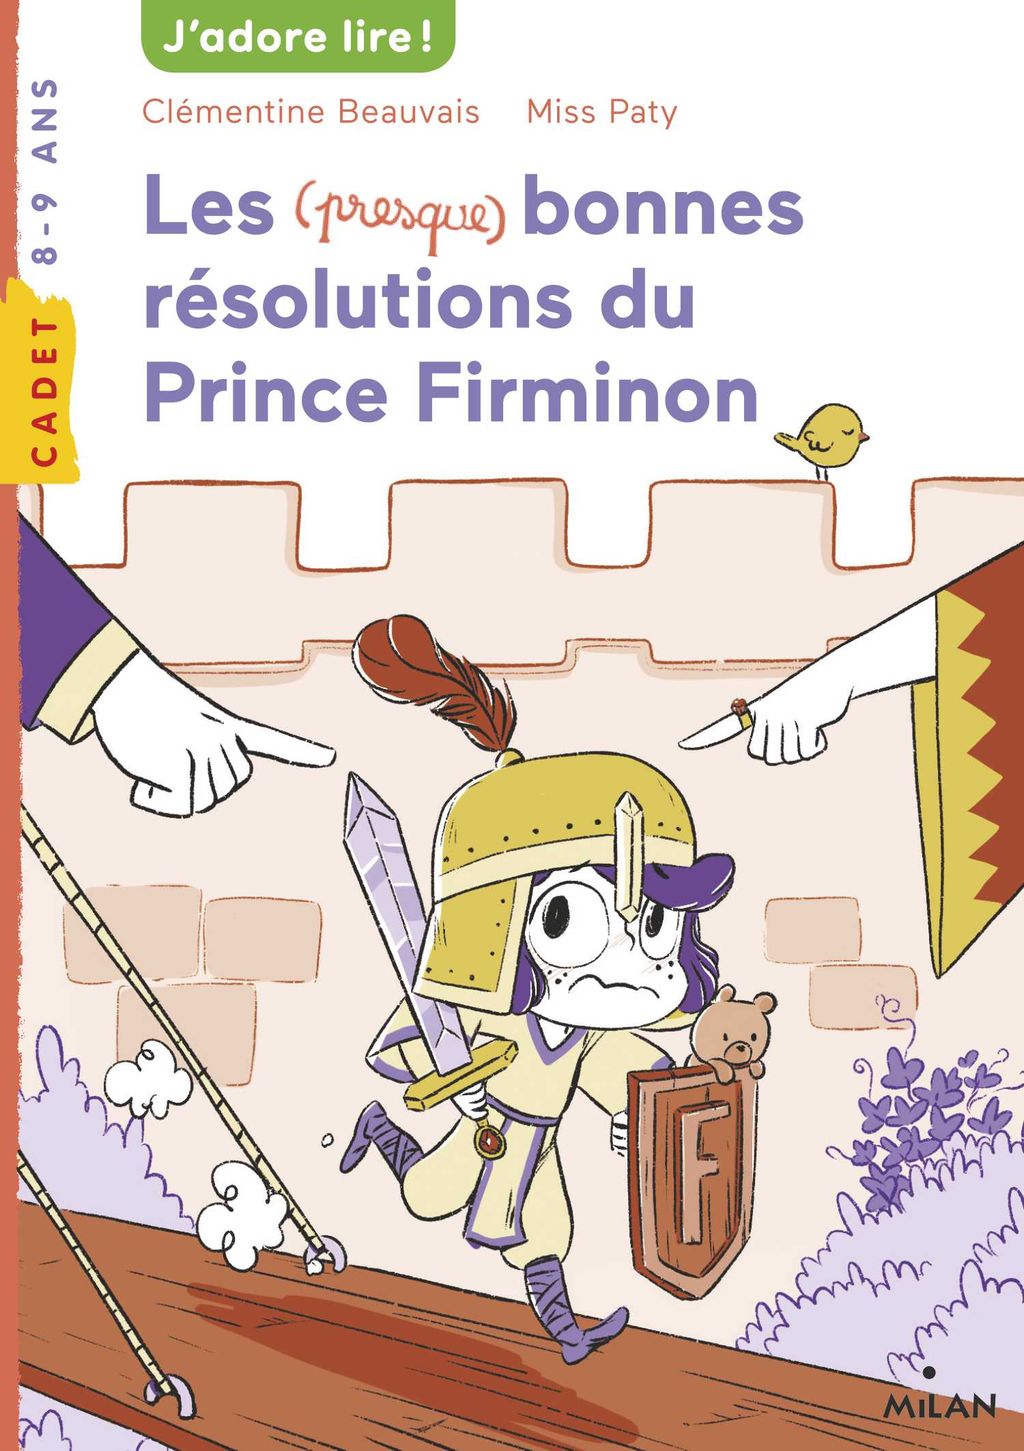 « Les bonnes résolutions du prince Firminon » cover